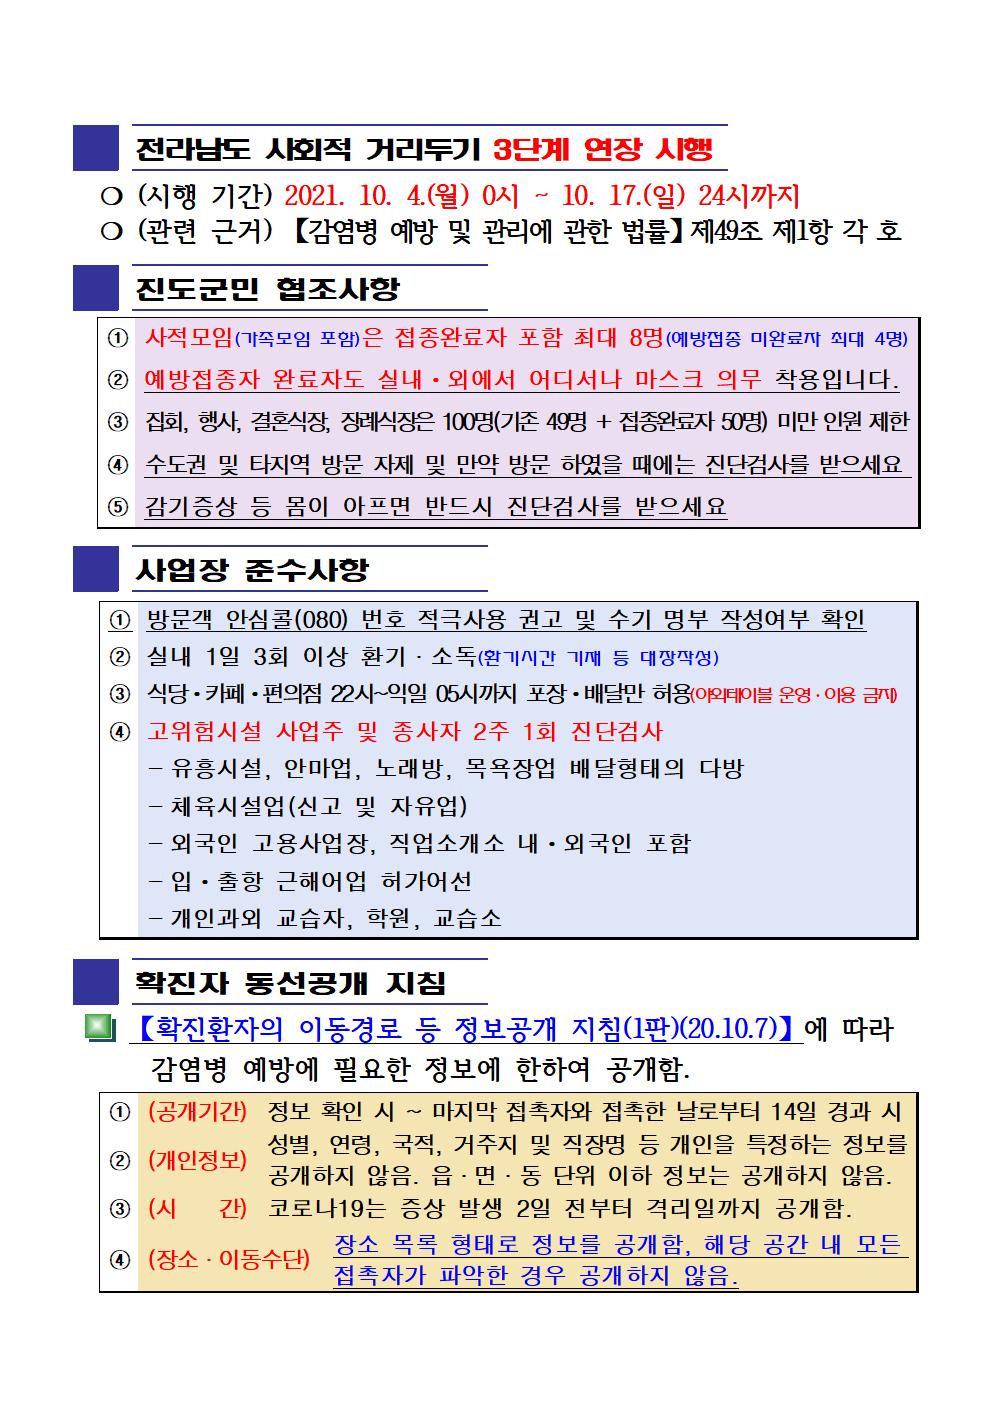 2021년 코로나19 대응 일일상황보고(10월 16일 24시 기준) 첨부#2